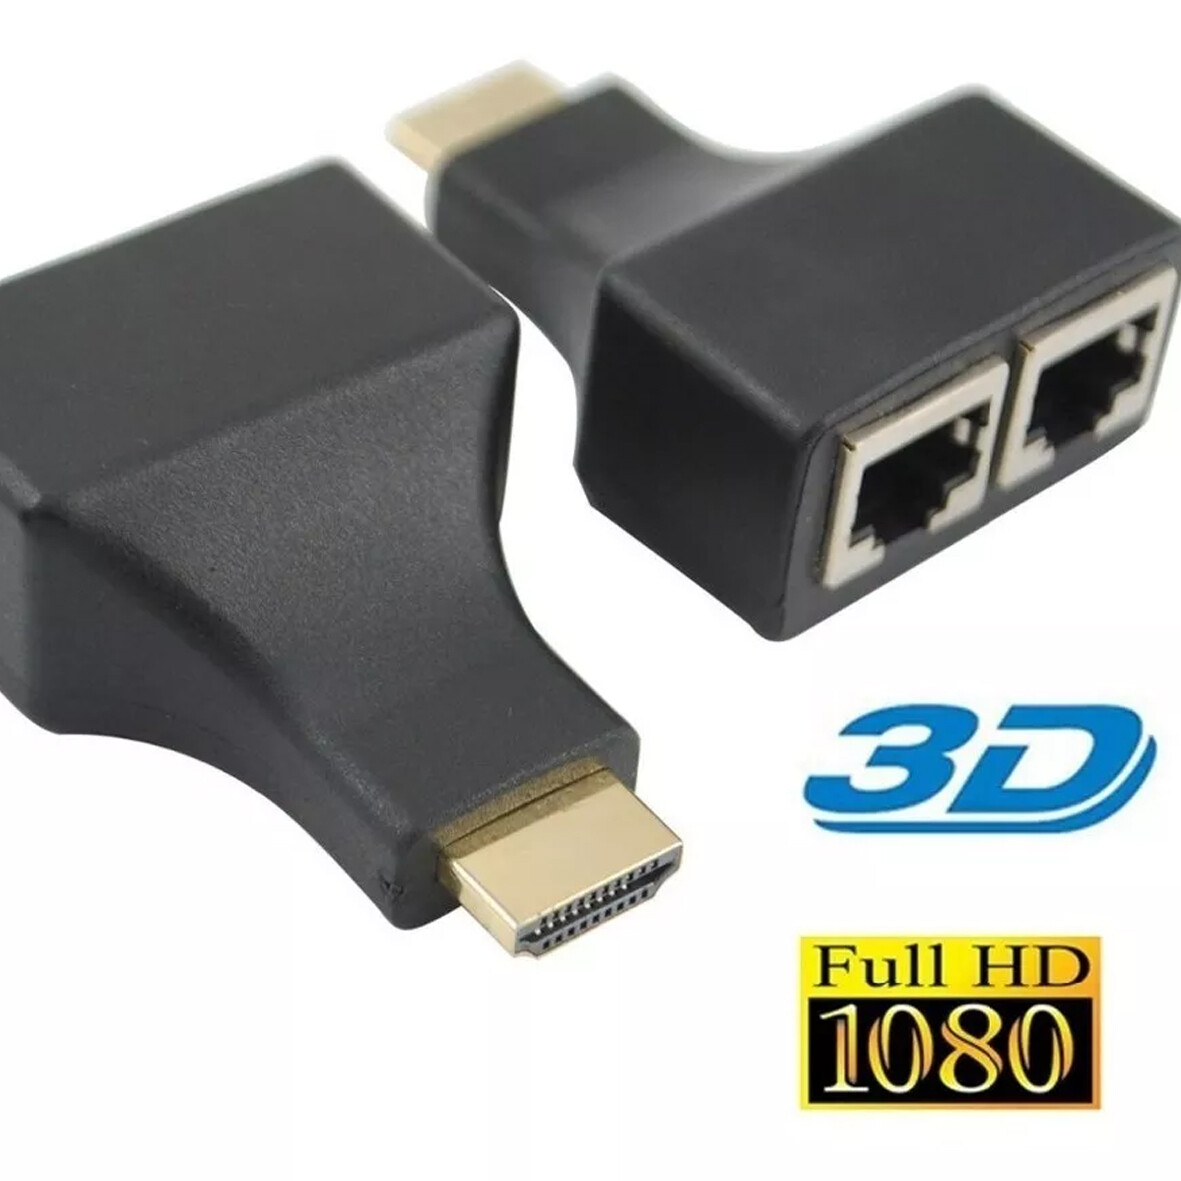 KIT EXTENSOR EXTENDER HDMI UTP RJ45 HASTA 30 METROS